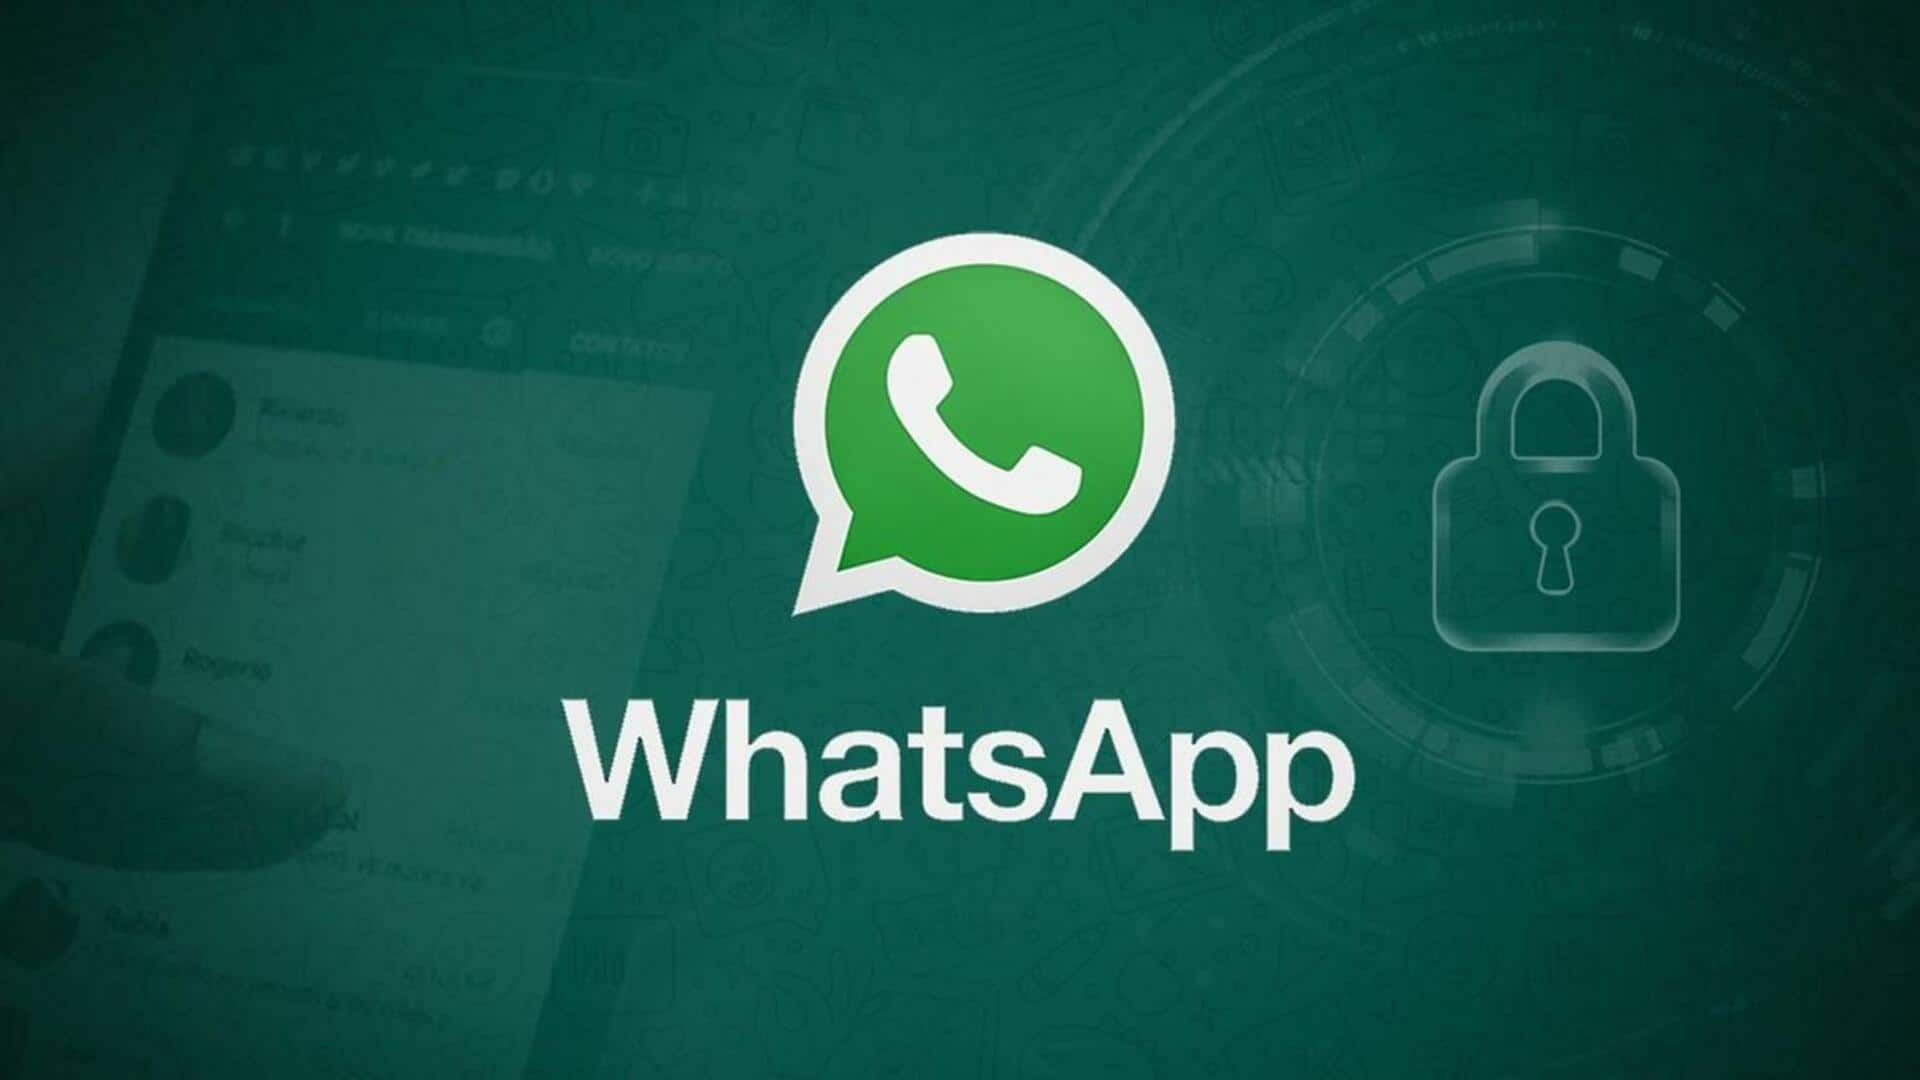 व्हाट्सऐप ने भारत में जनवरी में 29 लाख से अधिक अकाउंट्स पर लगाया प्रतिबंध